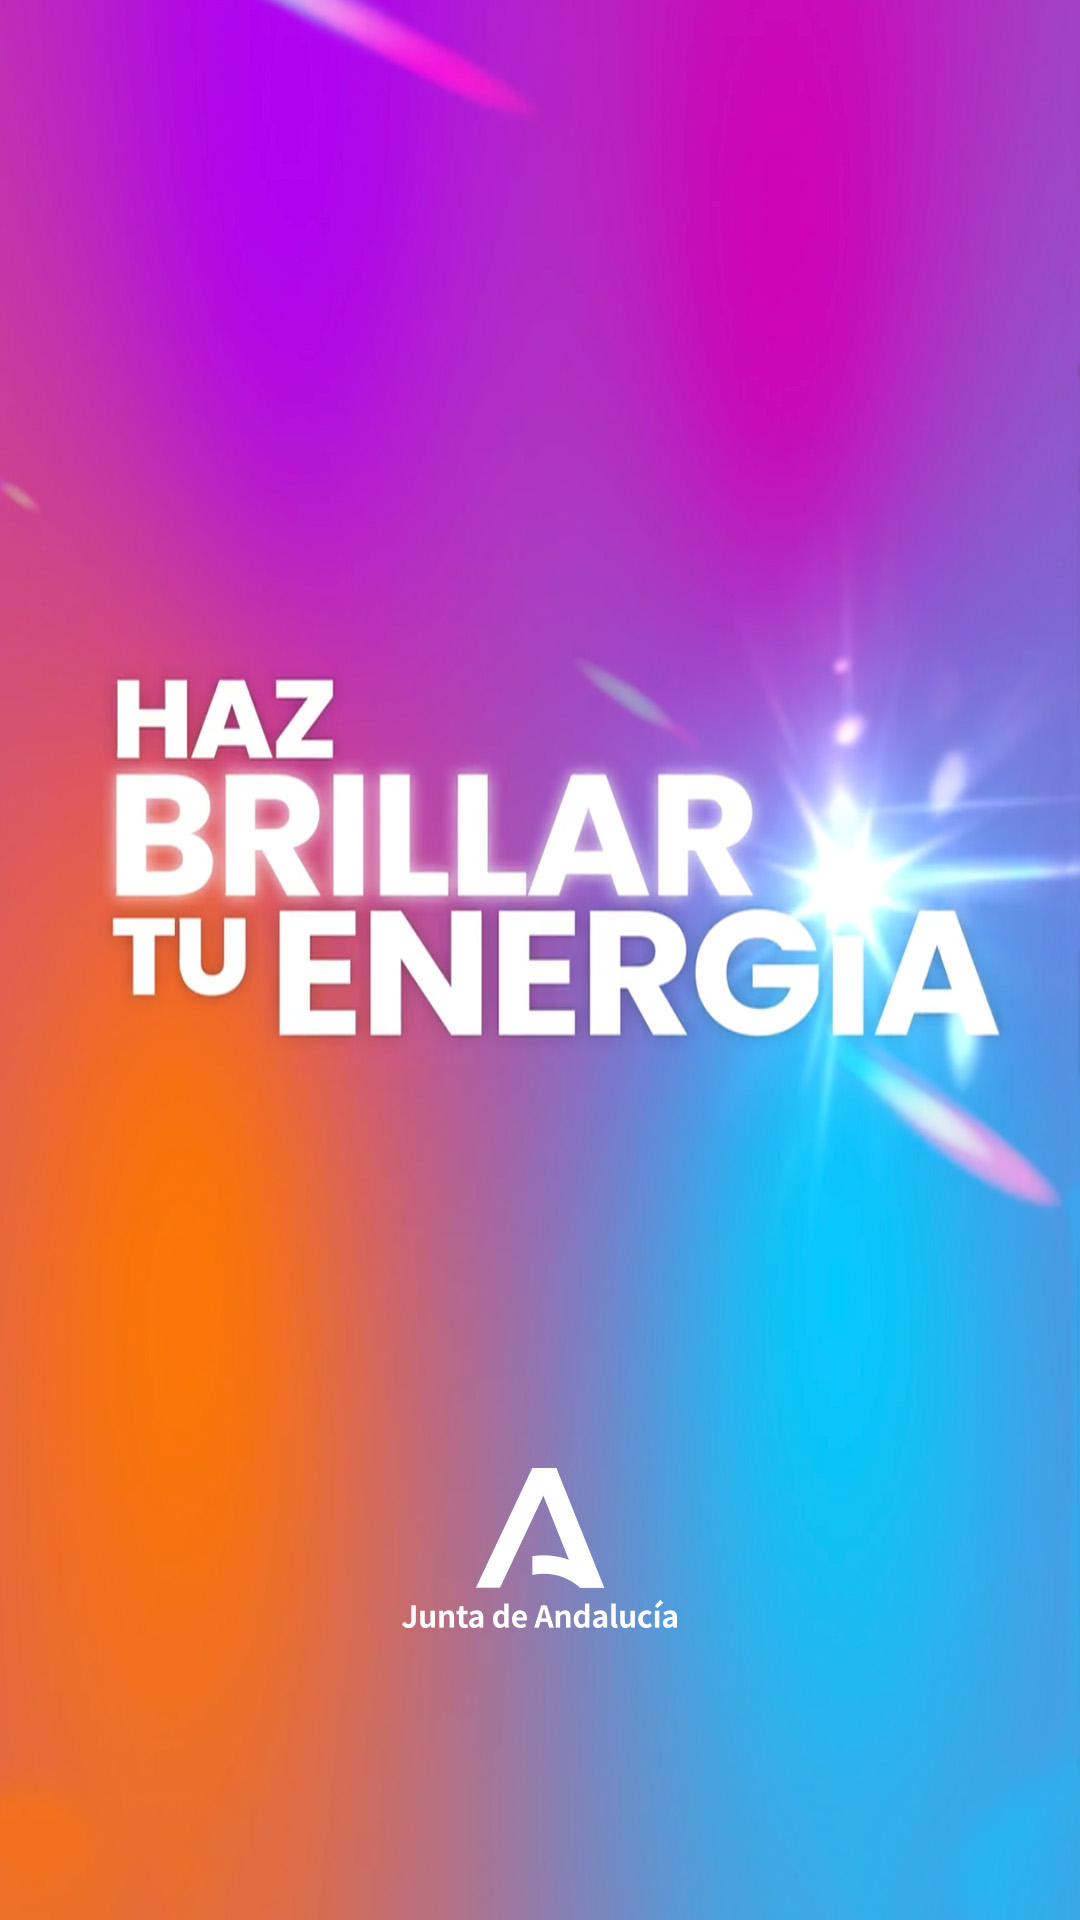 Junta de Andalucía energía